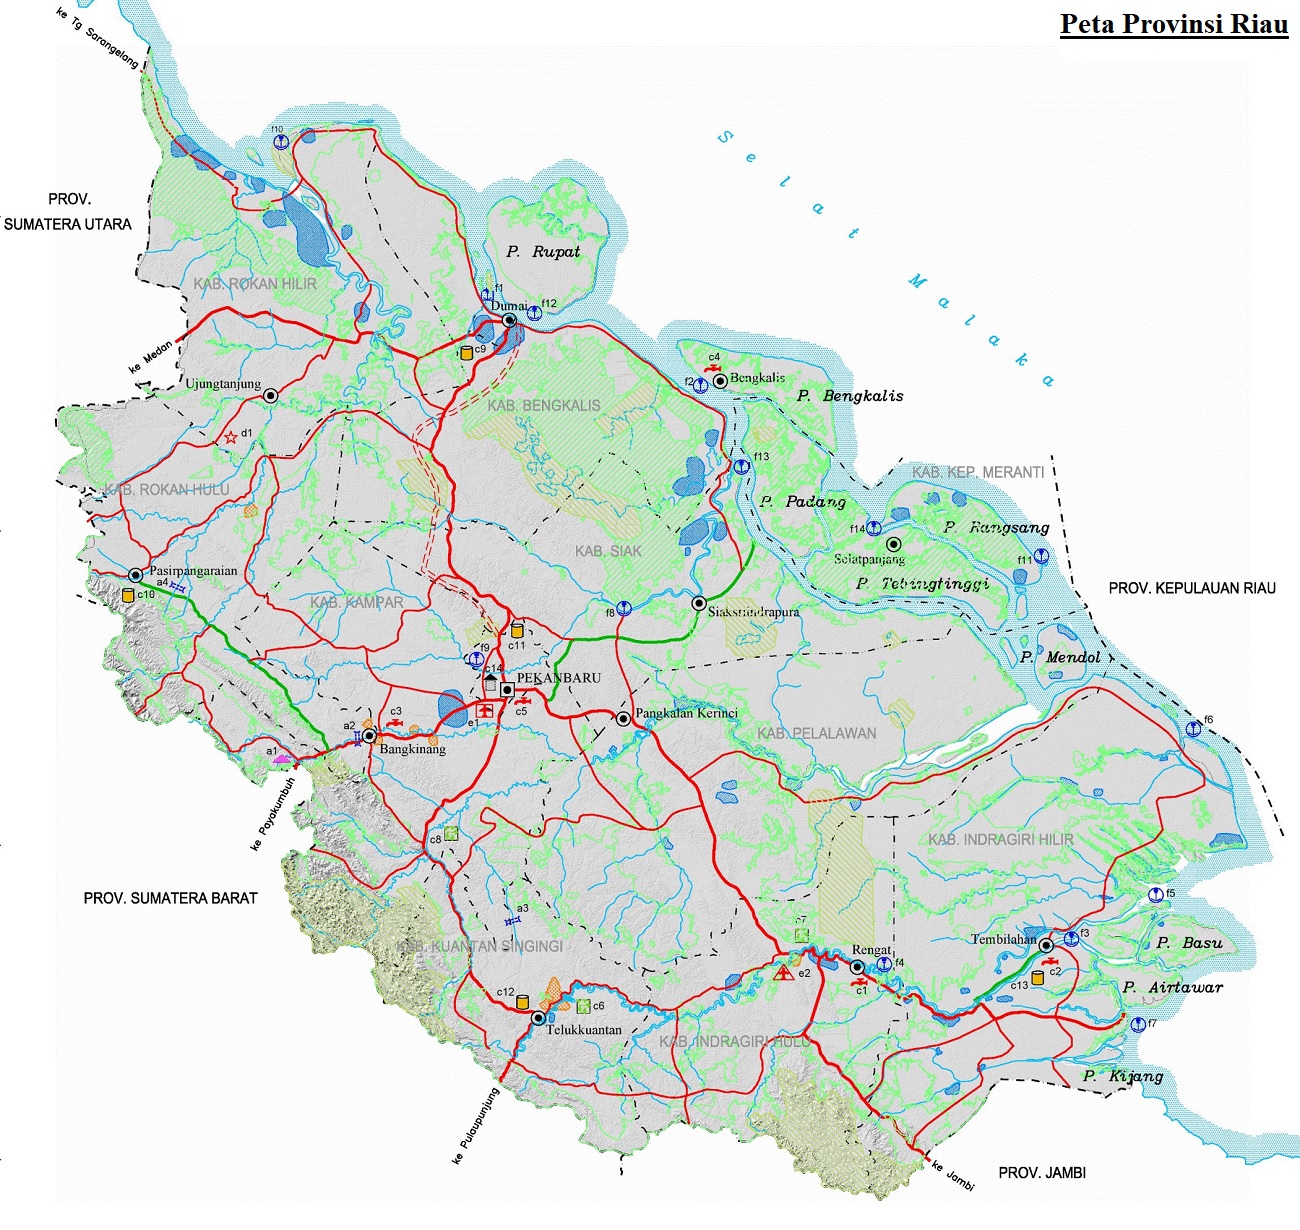 Peta Riau HD Lengkap Ukuran Besar dan Keterangannya - PETA HD